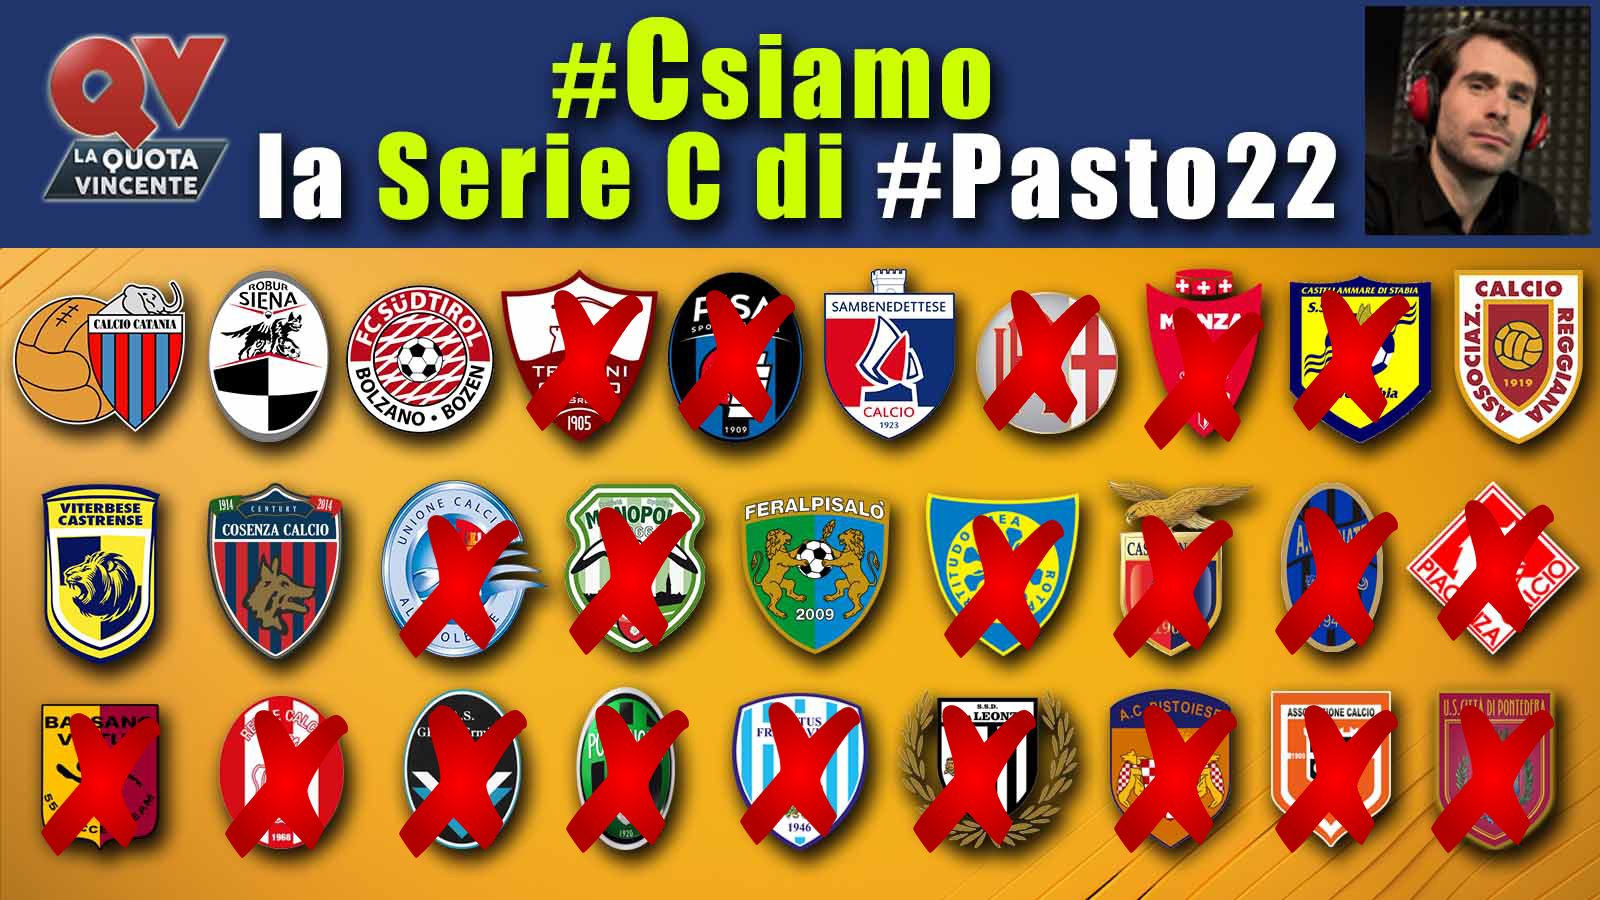 Pronostici Serie C 3 giugno: #Csiamo, il blog di #Pasto22 speciale playoff